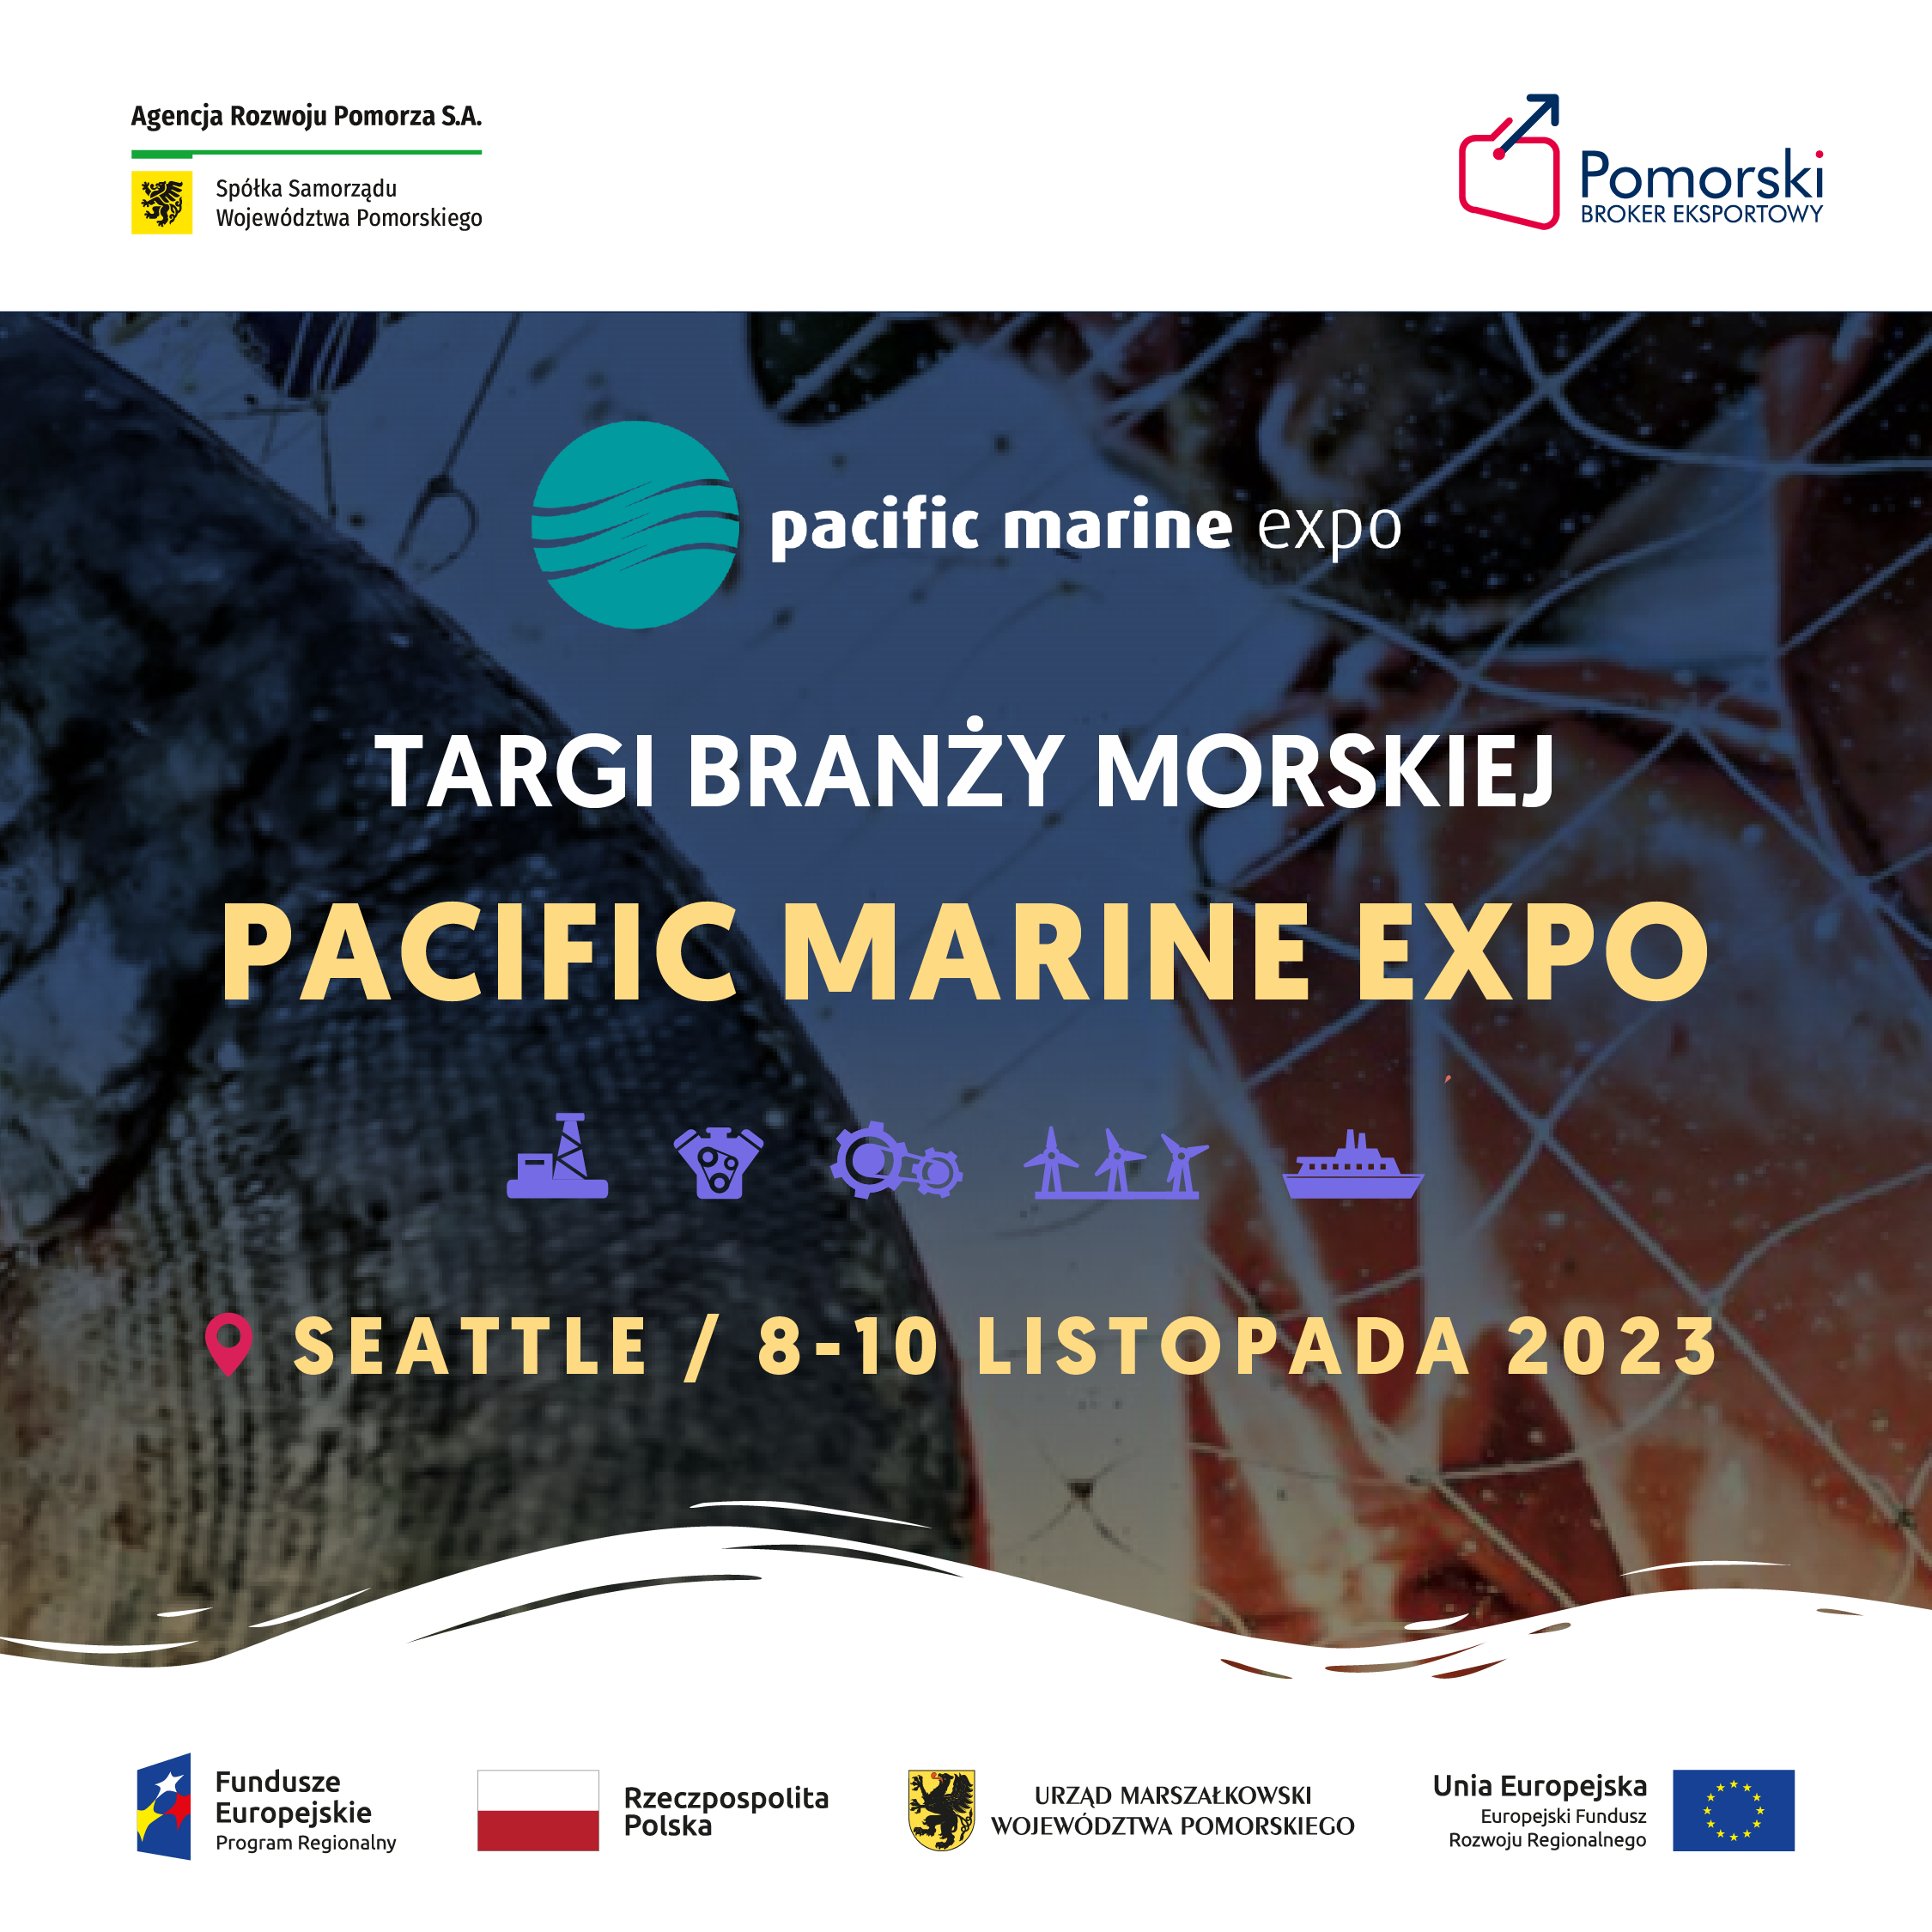 Zgłoś firmę na wyjazd z Pomorskim Brokerem Eksportowym na targi PACIFIC MARINE EXPO w Seattle w listopadzie 2023